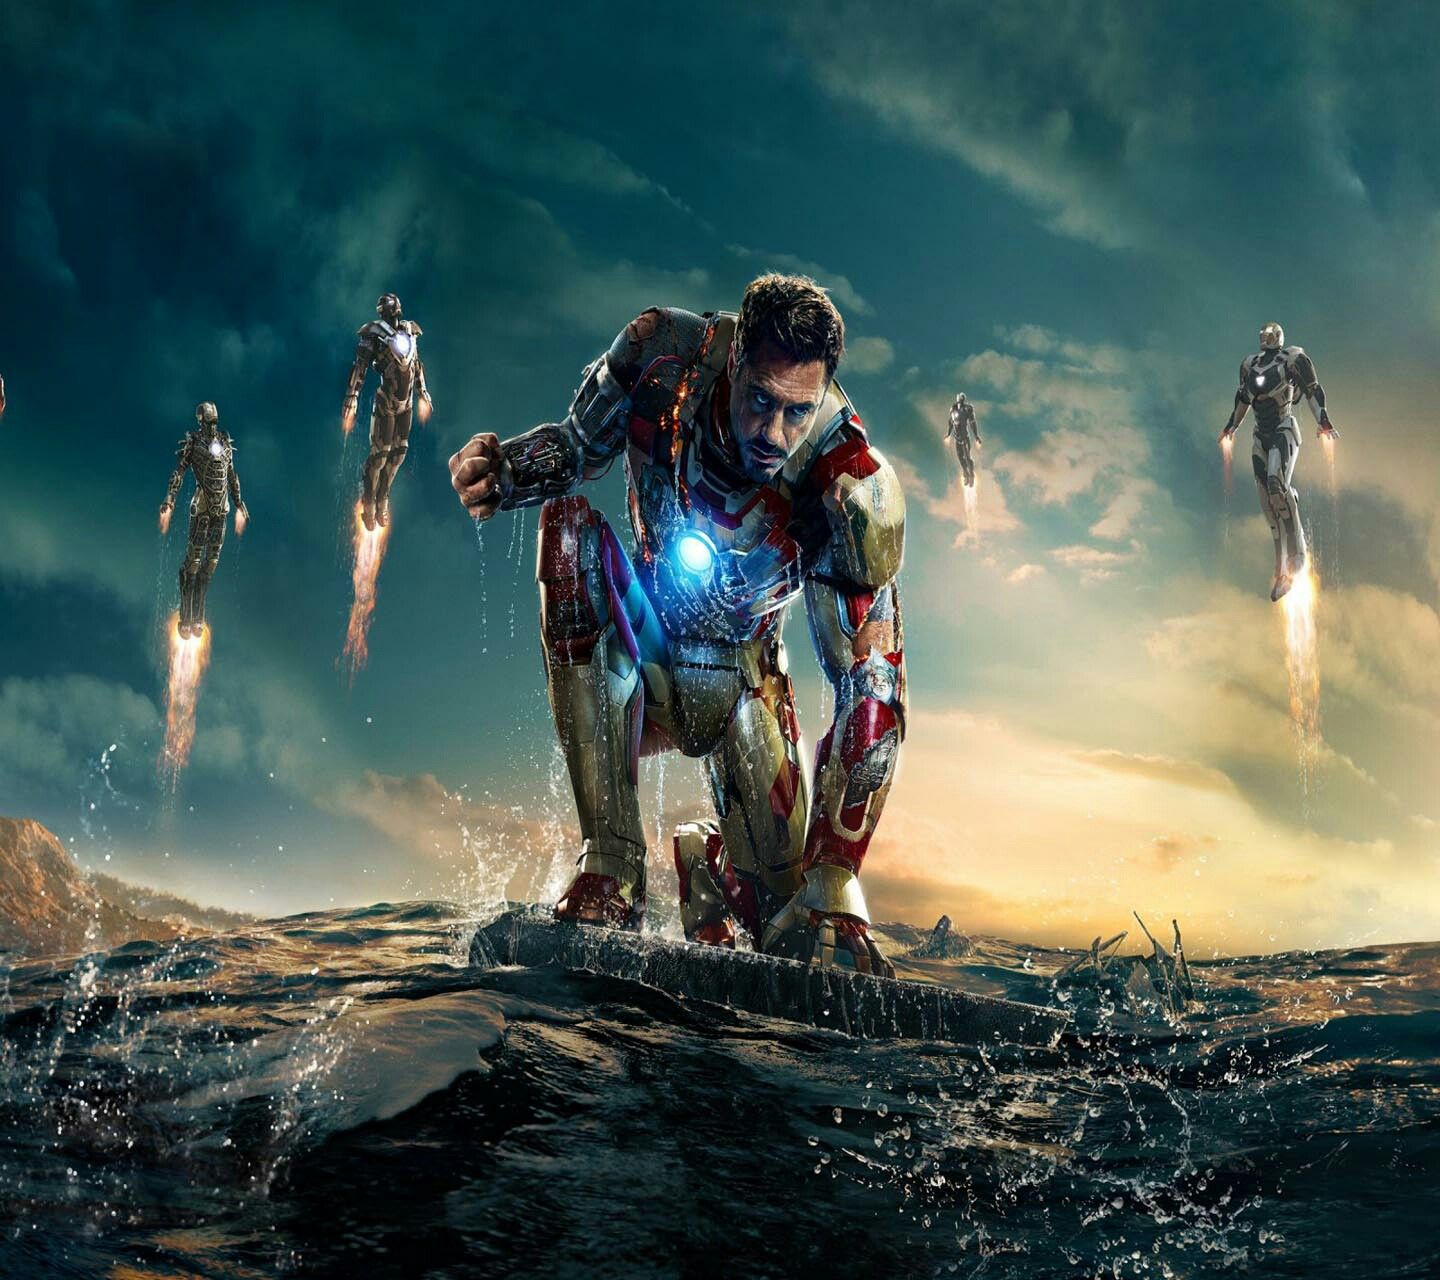 Team Iron Man forever ❤. Iron man wallpaper, Man wallpaper, New wallpaper hd